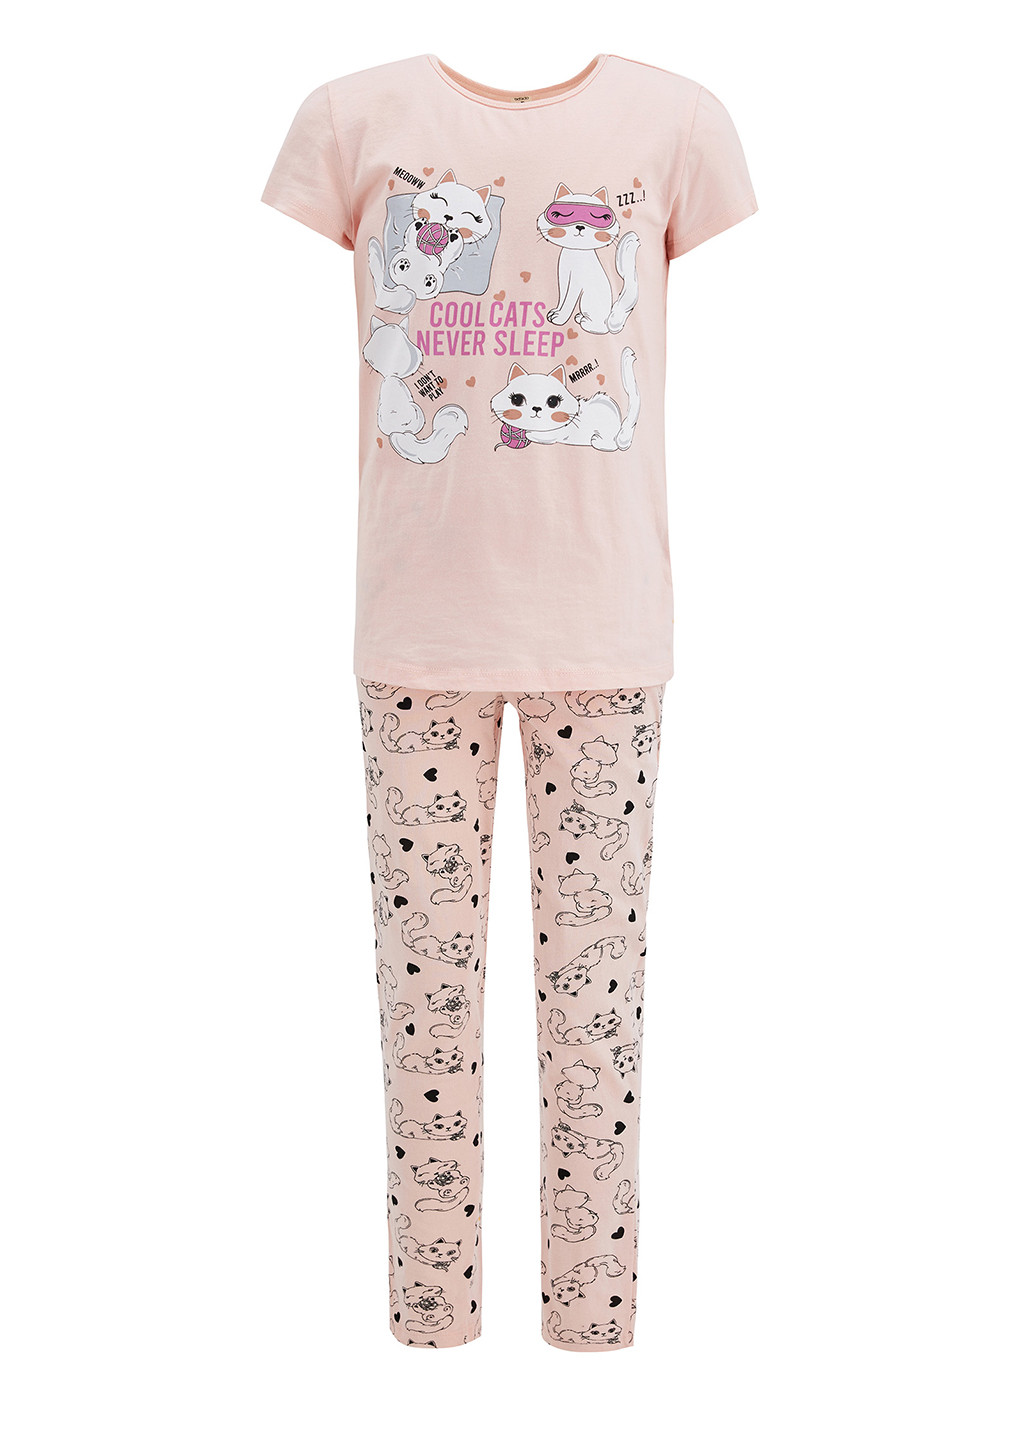 Розовая всесезон пижама(футболка, брюки) футболка + брюки DeFacto